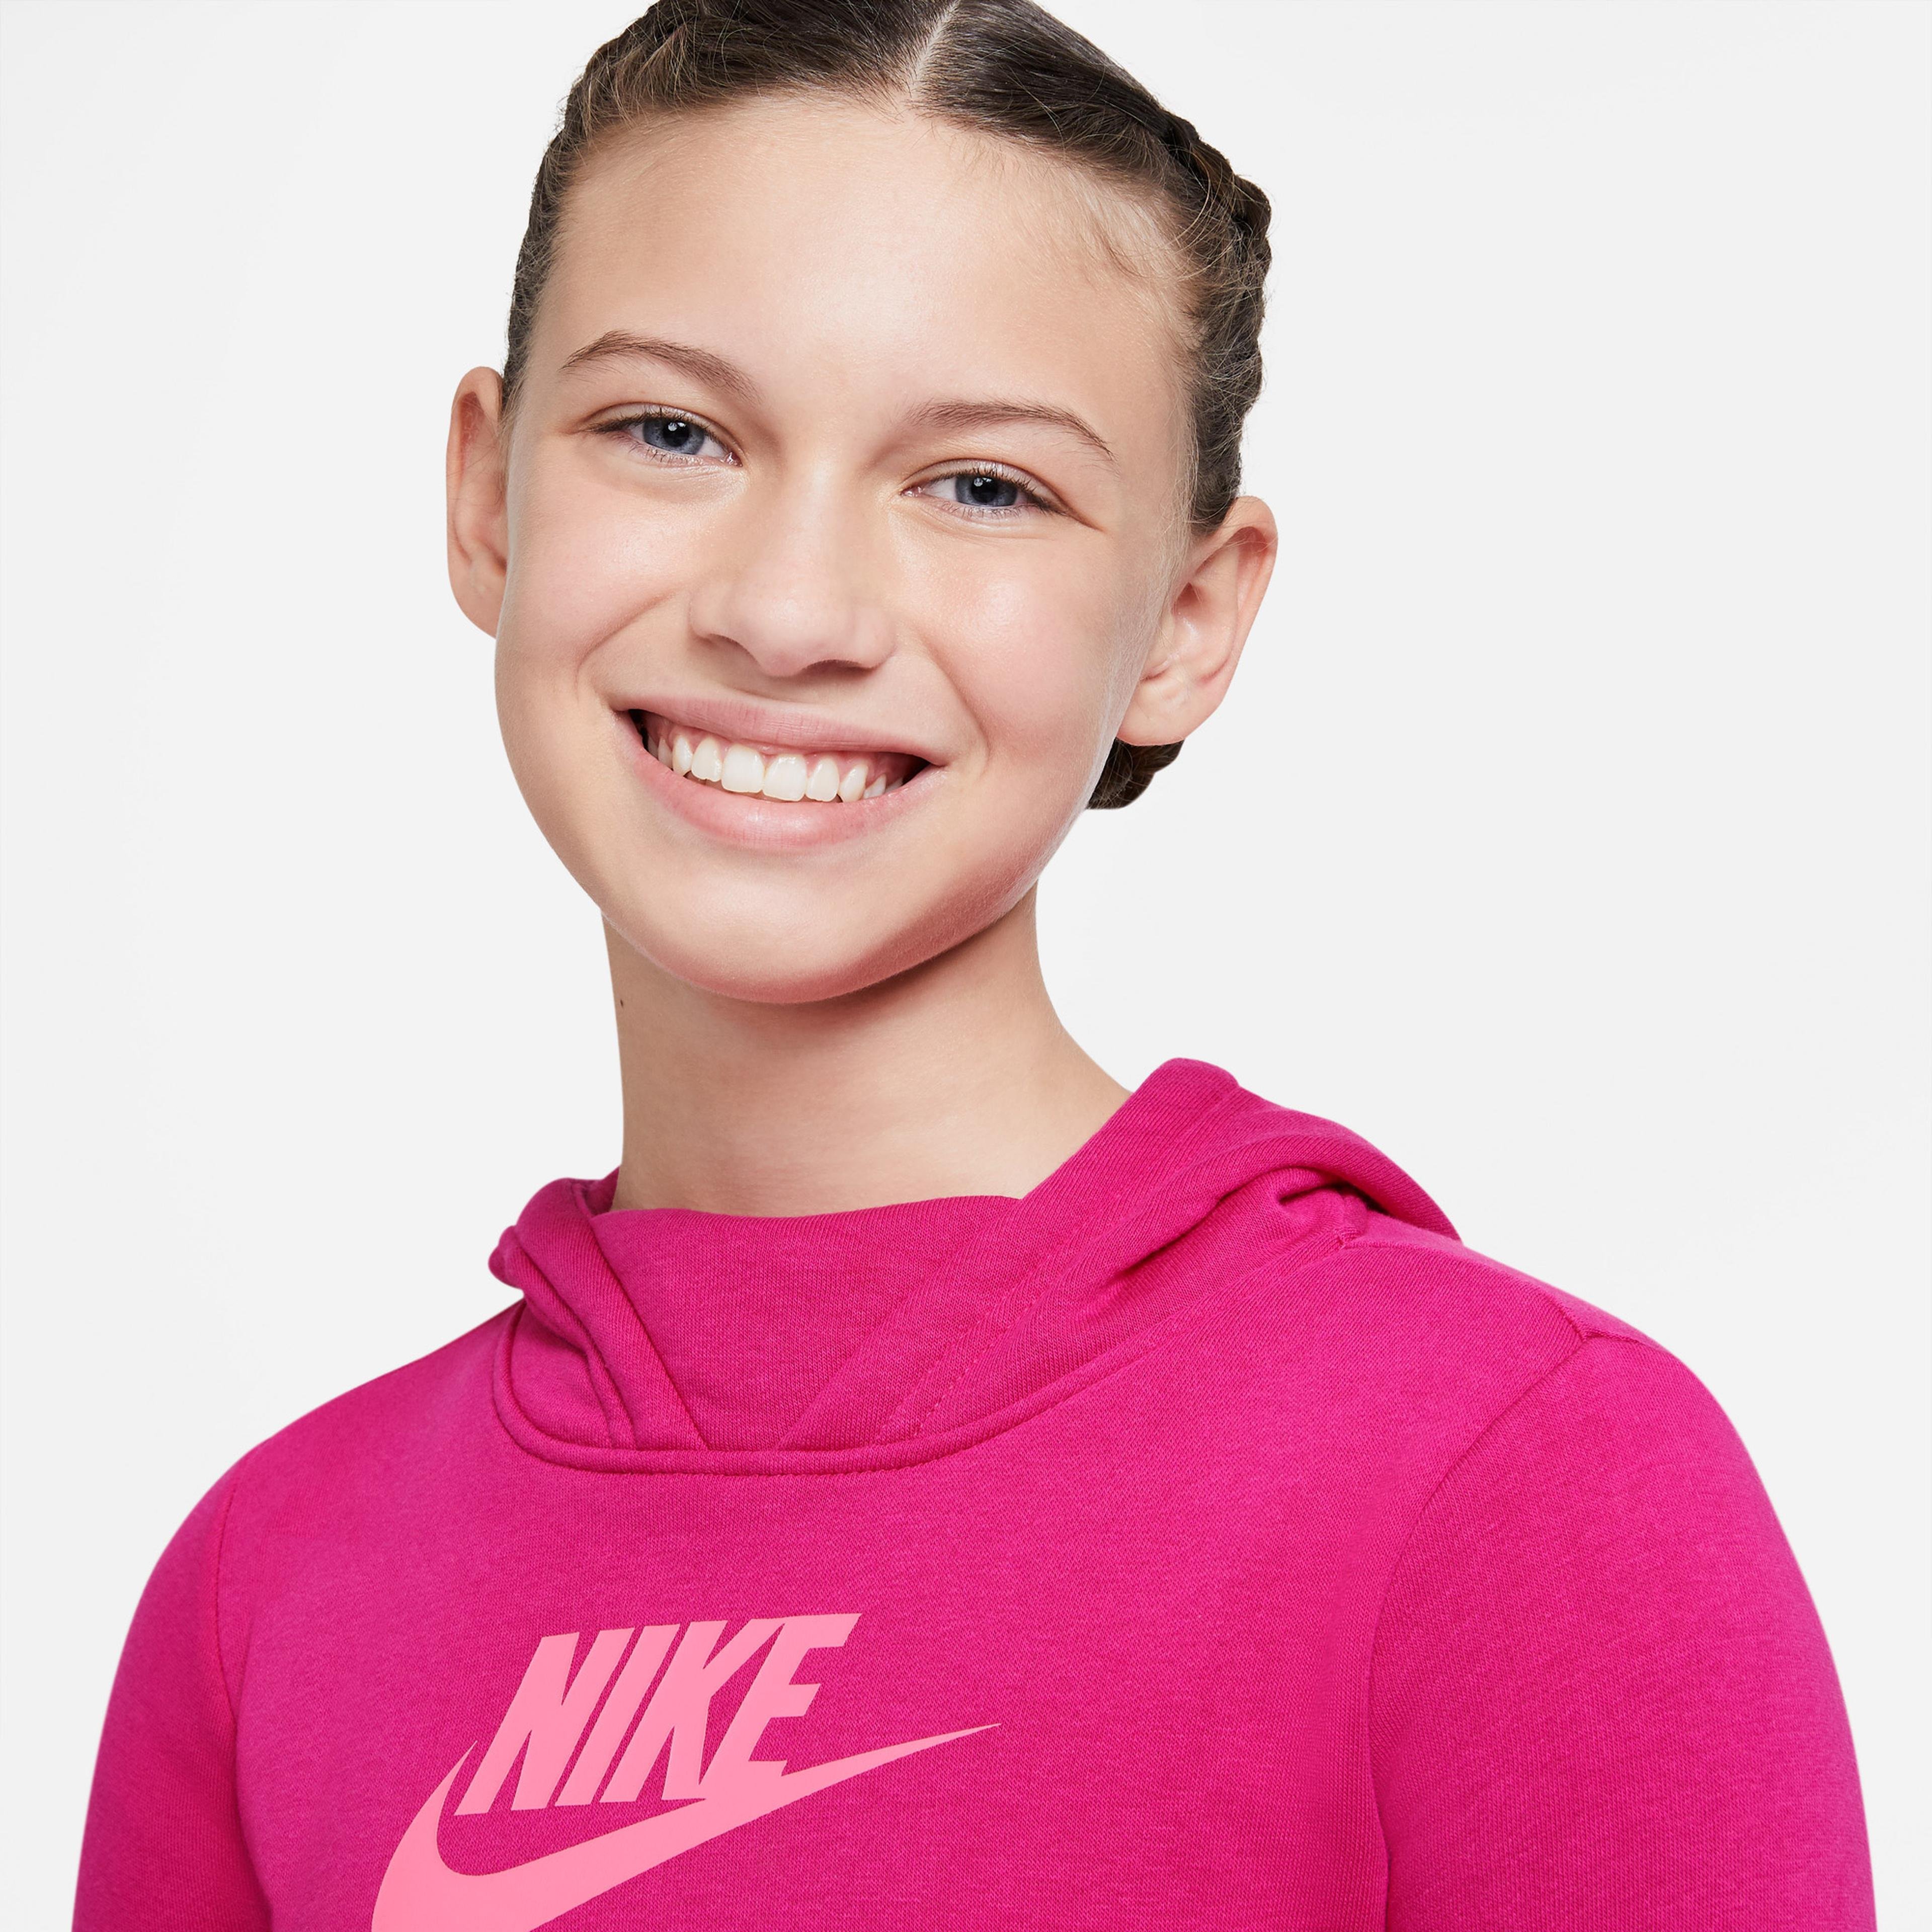 Nike Sportswear Çocuk Kırmızı Sweatshirt